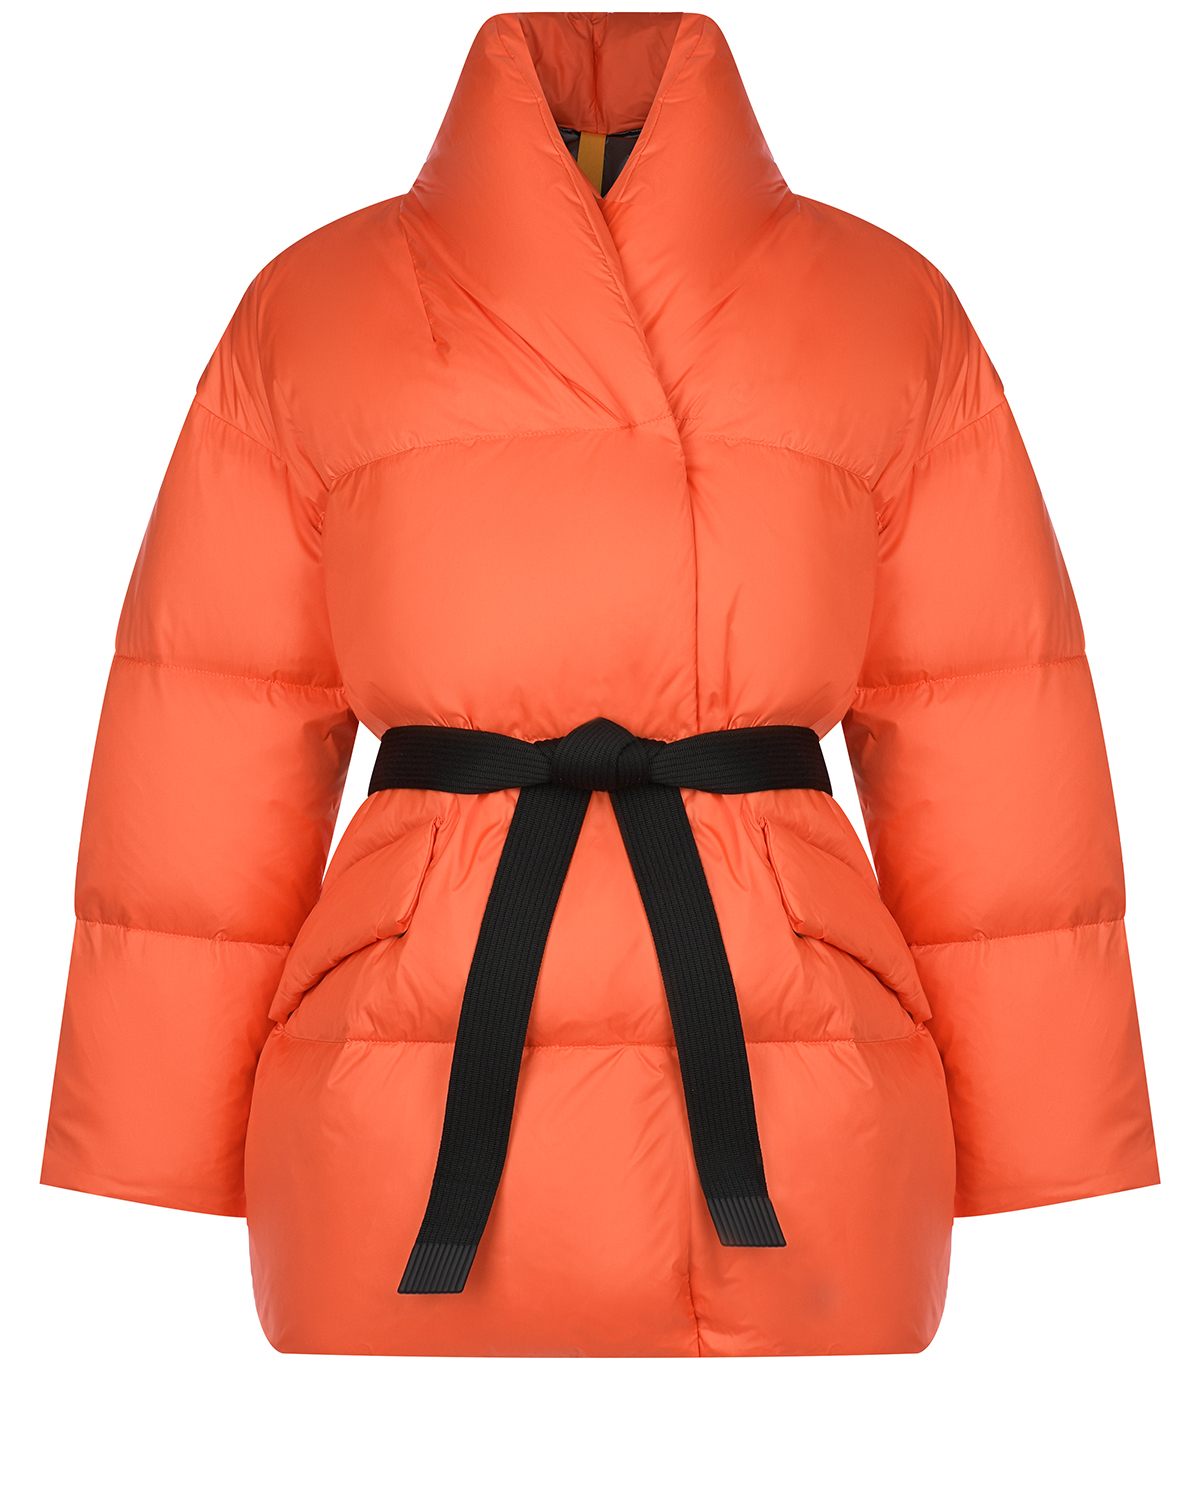 Оранжевая куртка с черным поясом Naumi, размер 36, цвет оранжевый